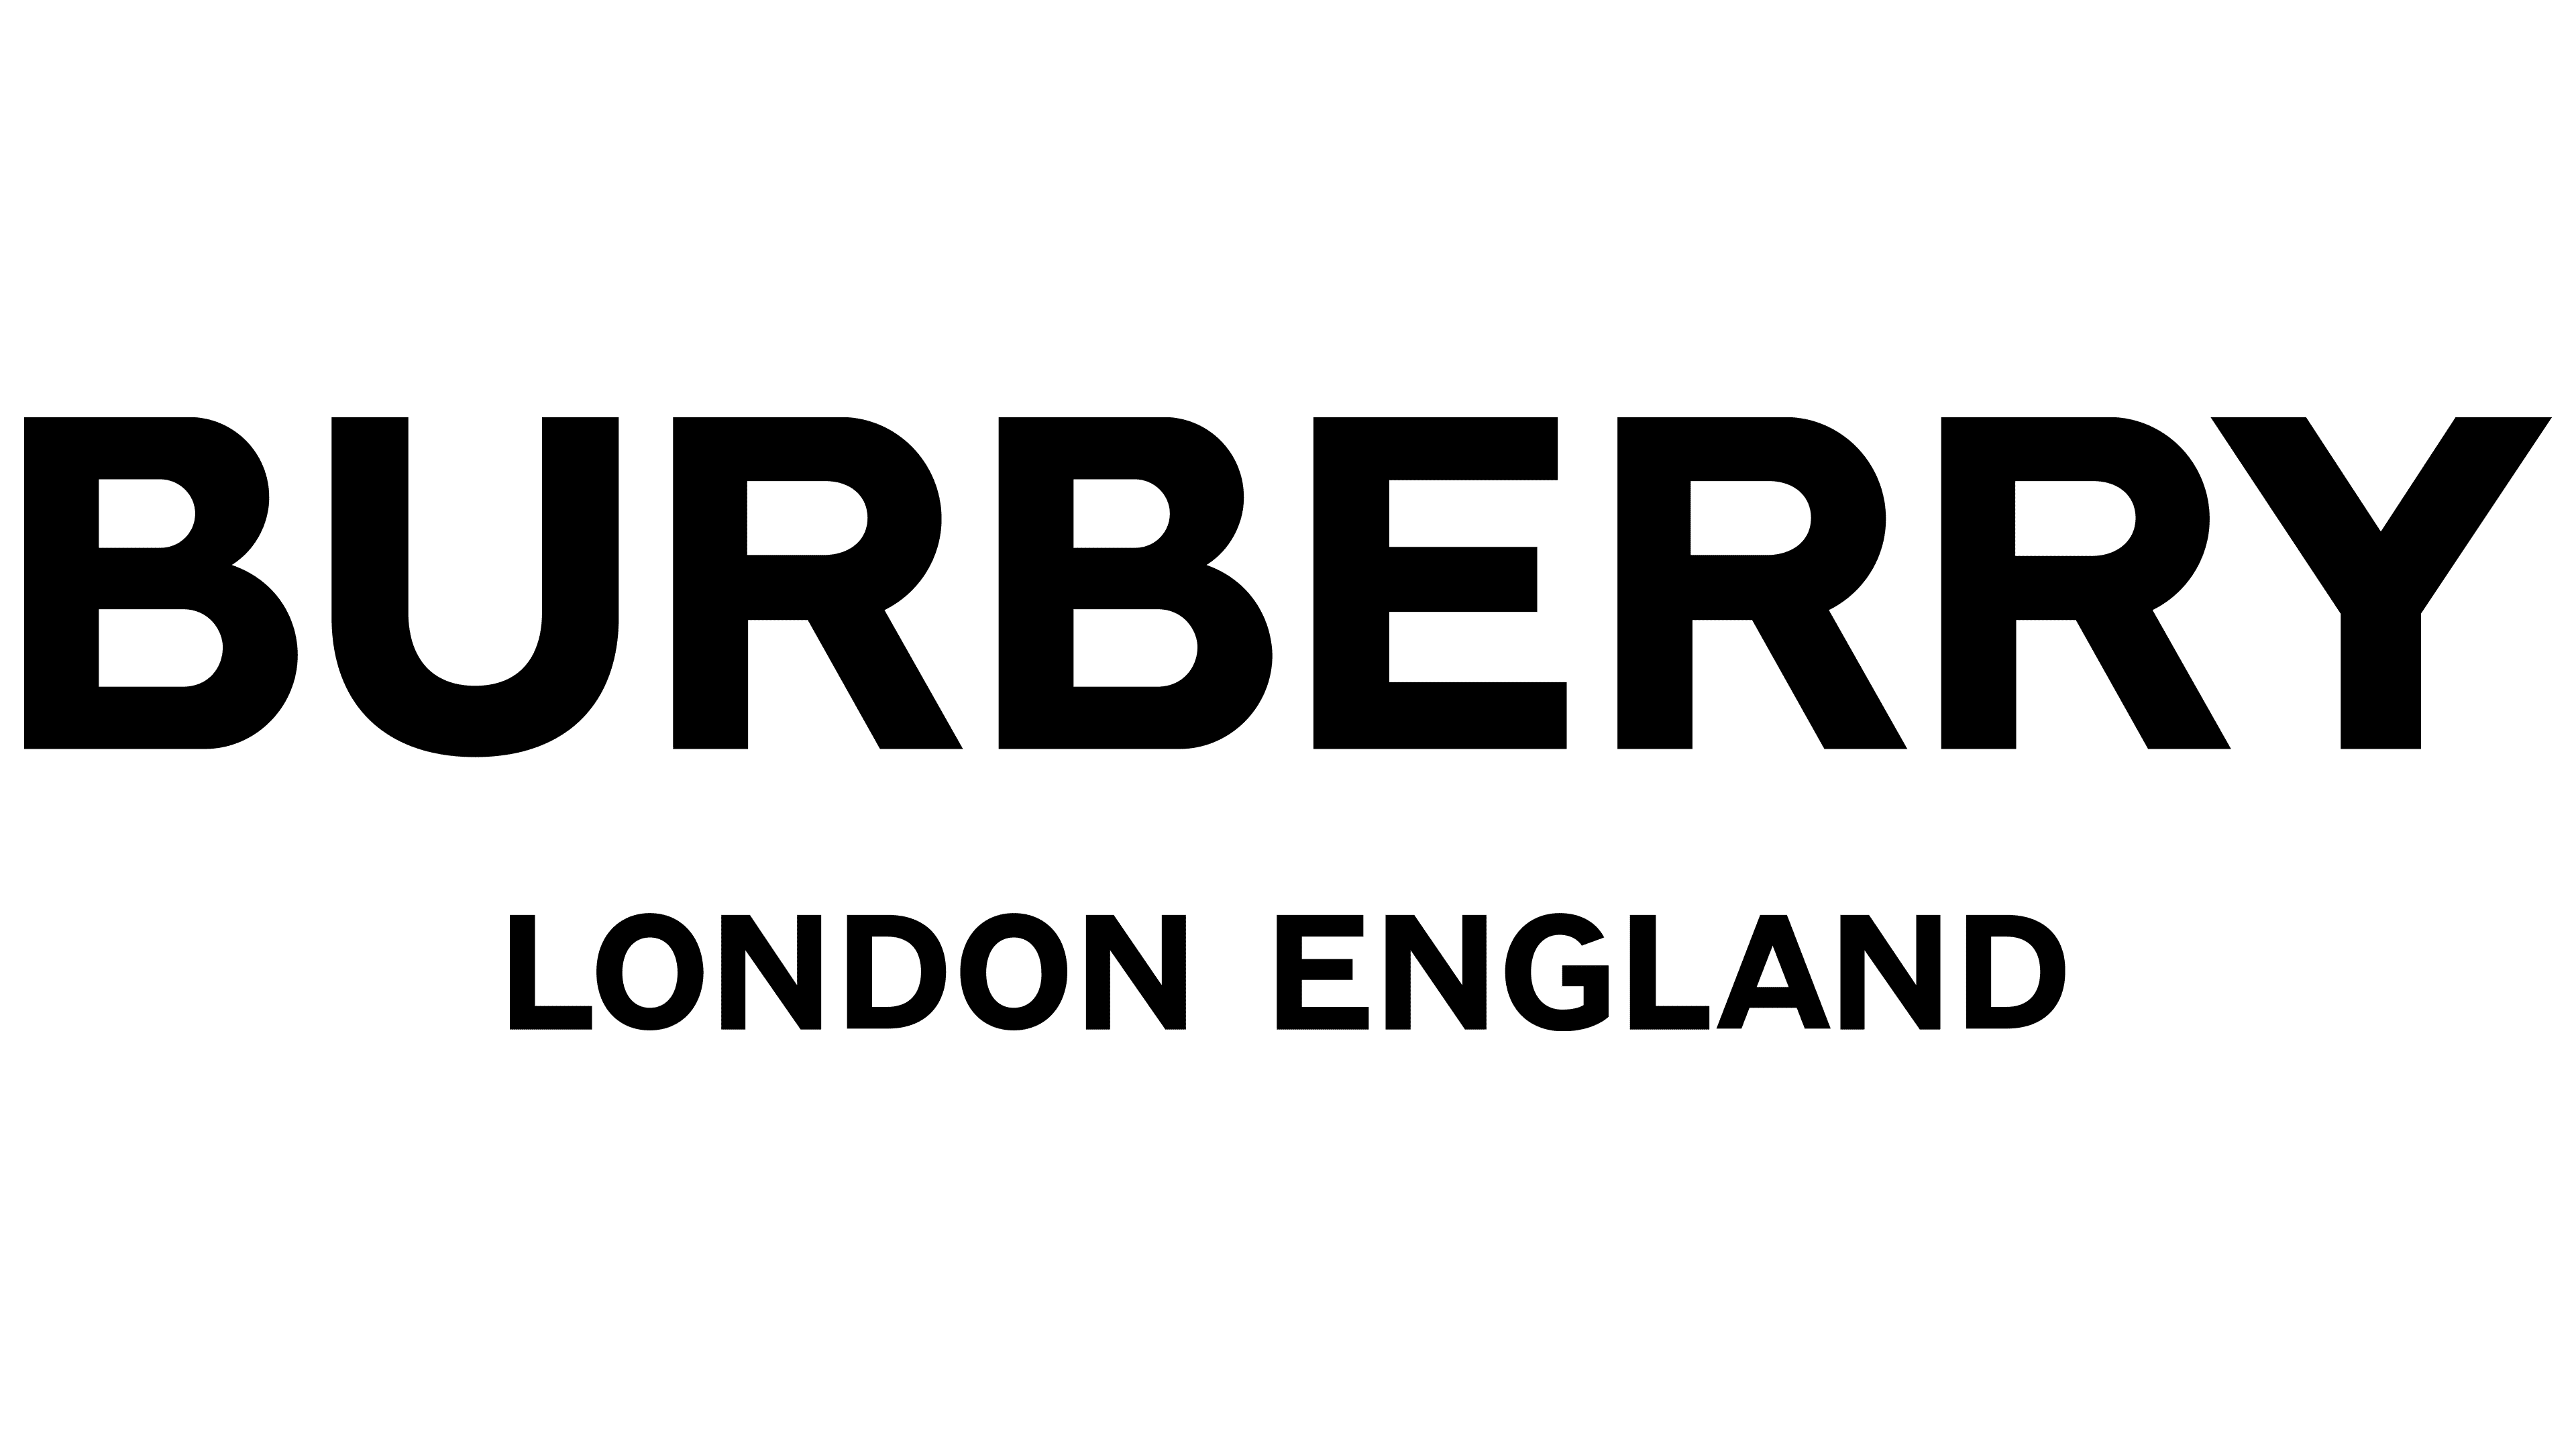 Xem ngay các mẫu burberry logo png với độ phân giải cao và chuẩn xác